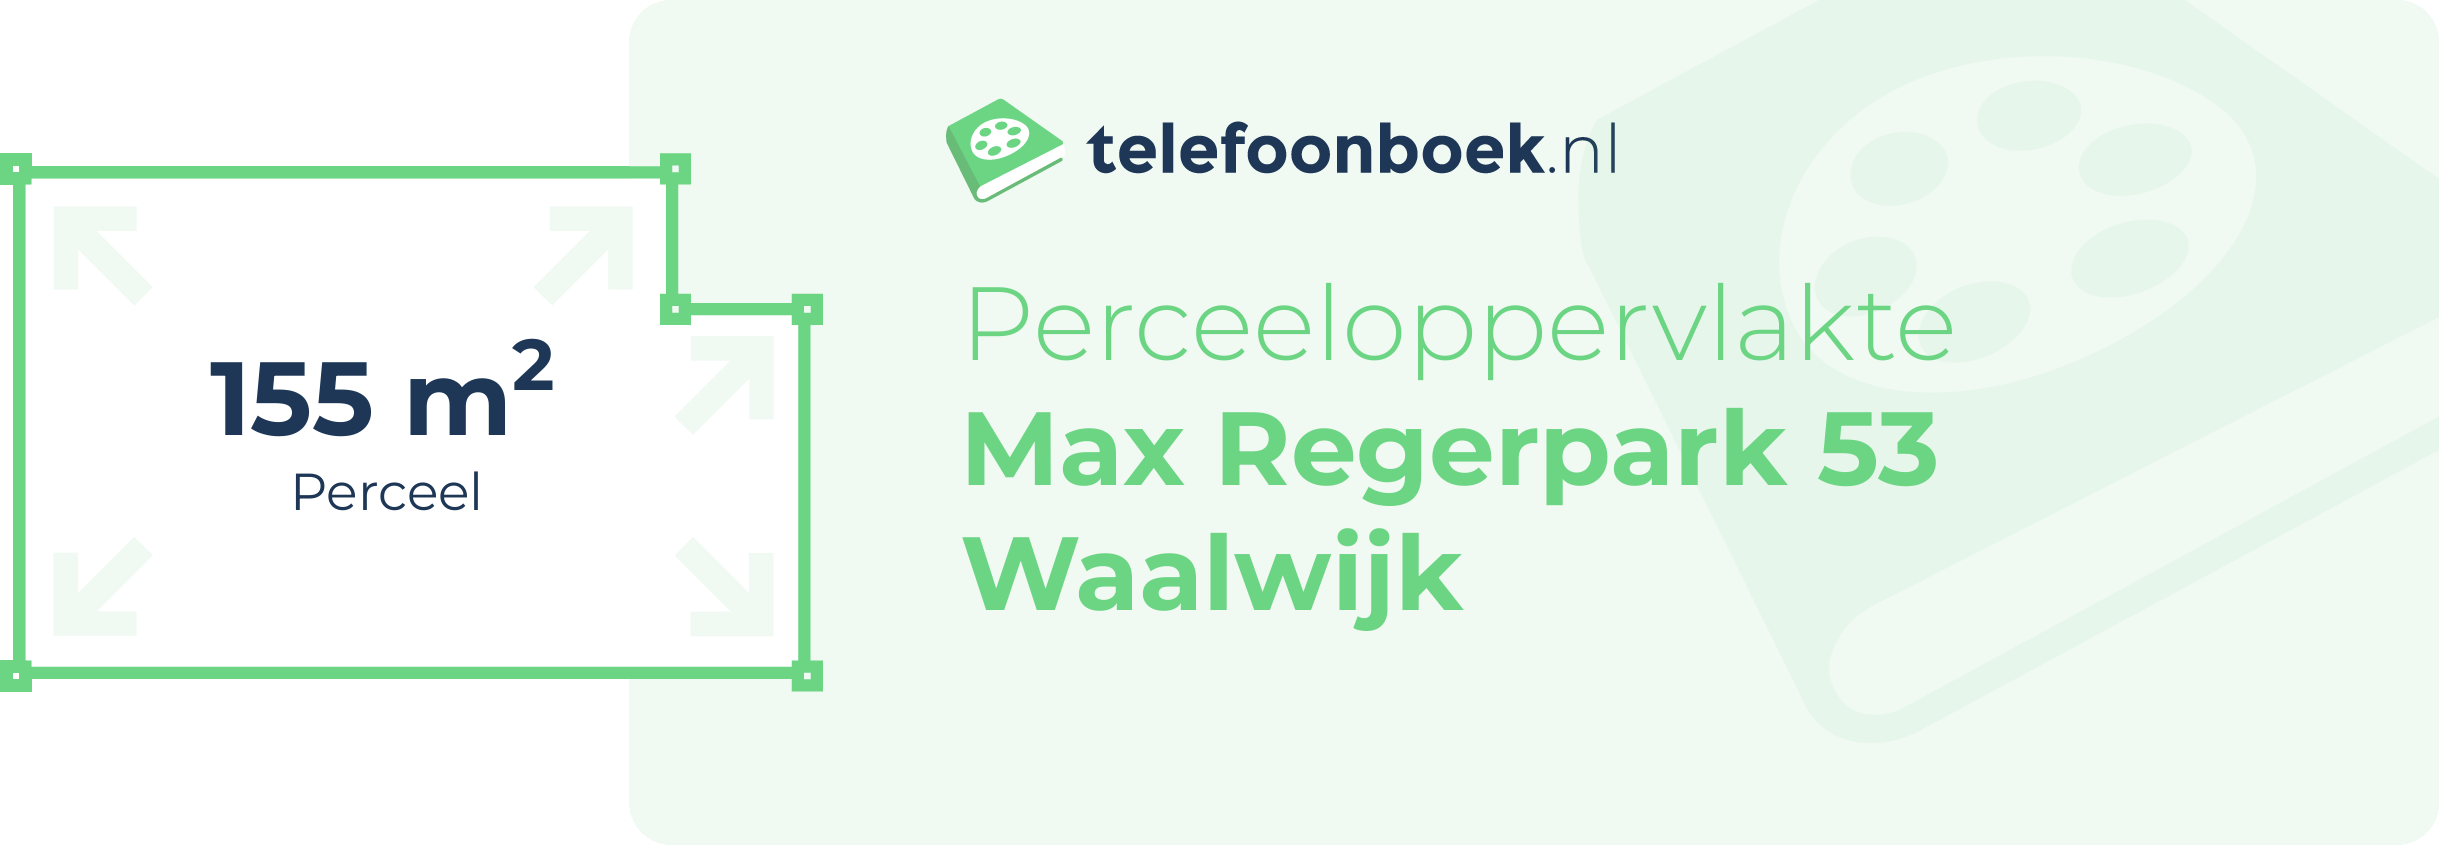 Perceeloppervlakte Max Regerpark 53 Waalwijk